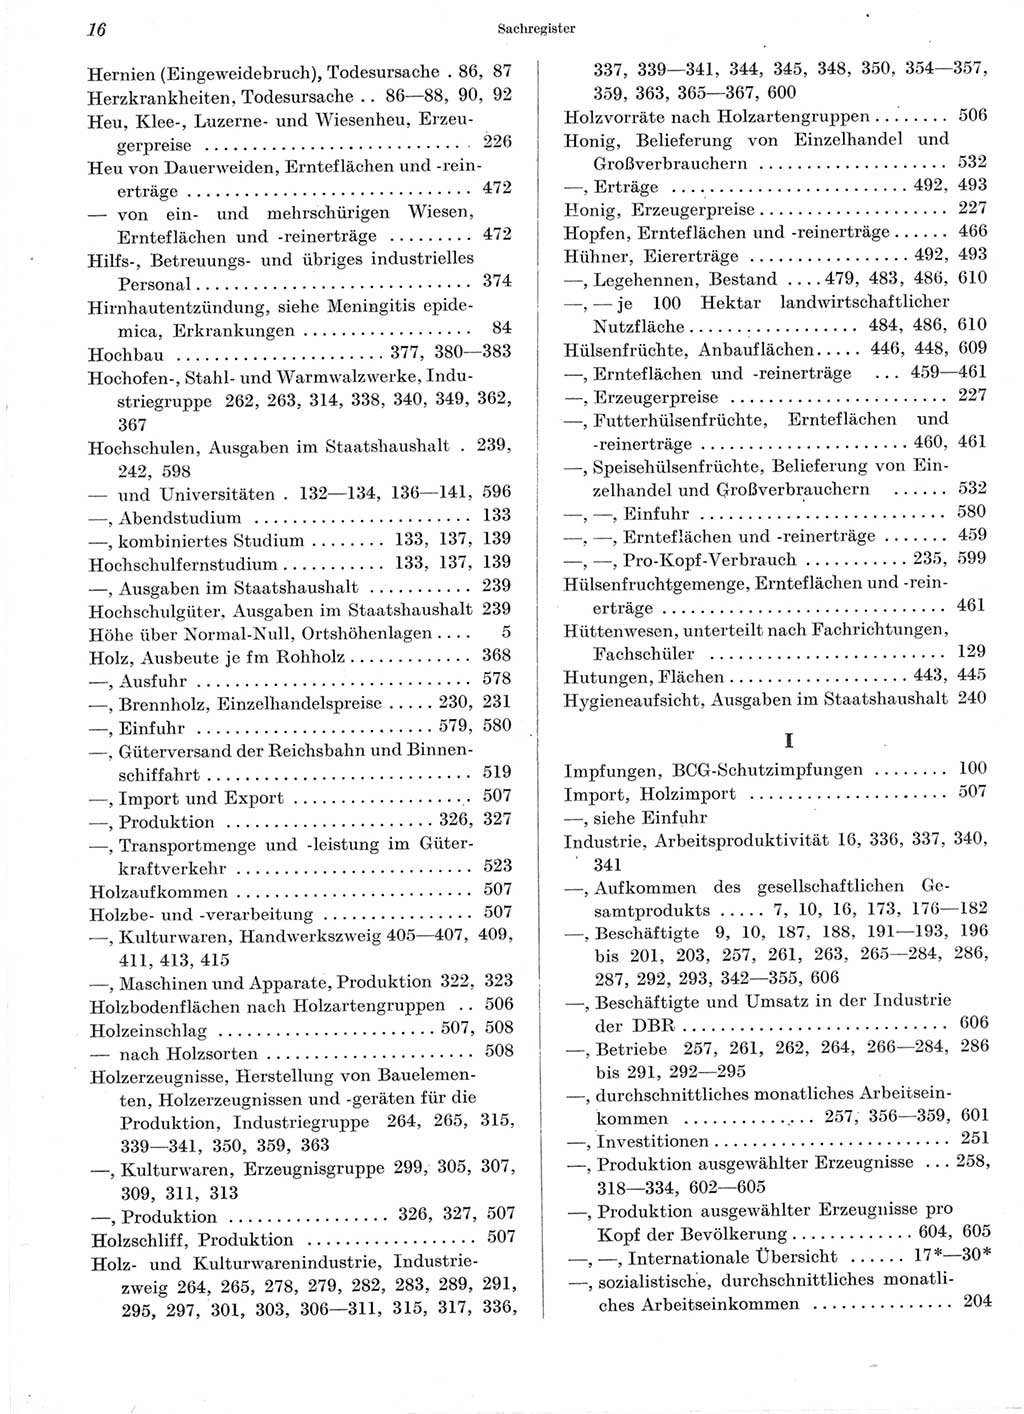 Statistisches Jahrbuch der Deutschen Demokratischen Republik (DDR) 1960-1961, Seite 16 (Stat. Jb. DDR 1960-1961, S. 16)